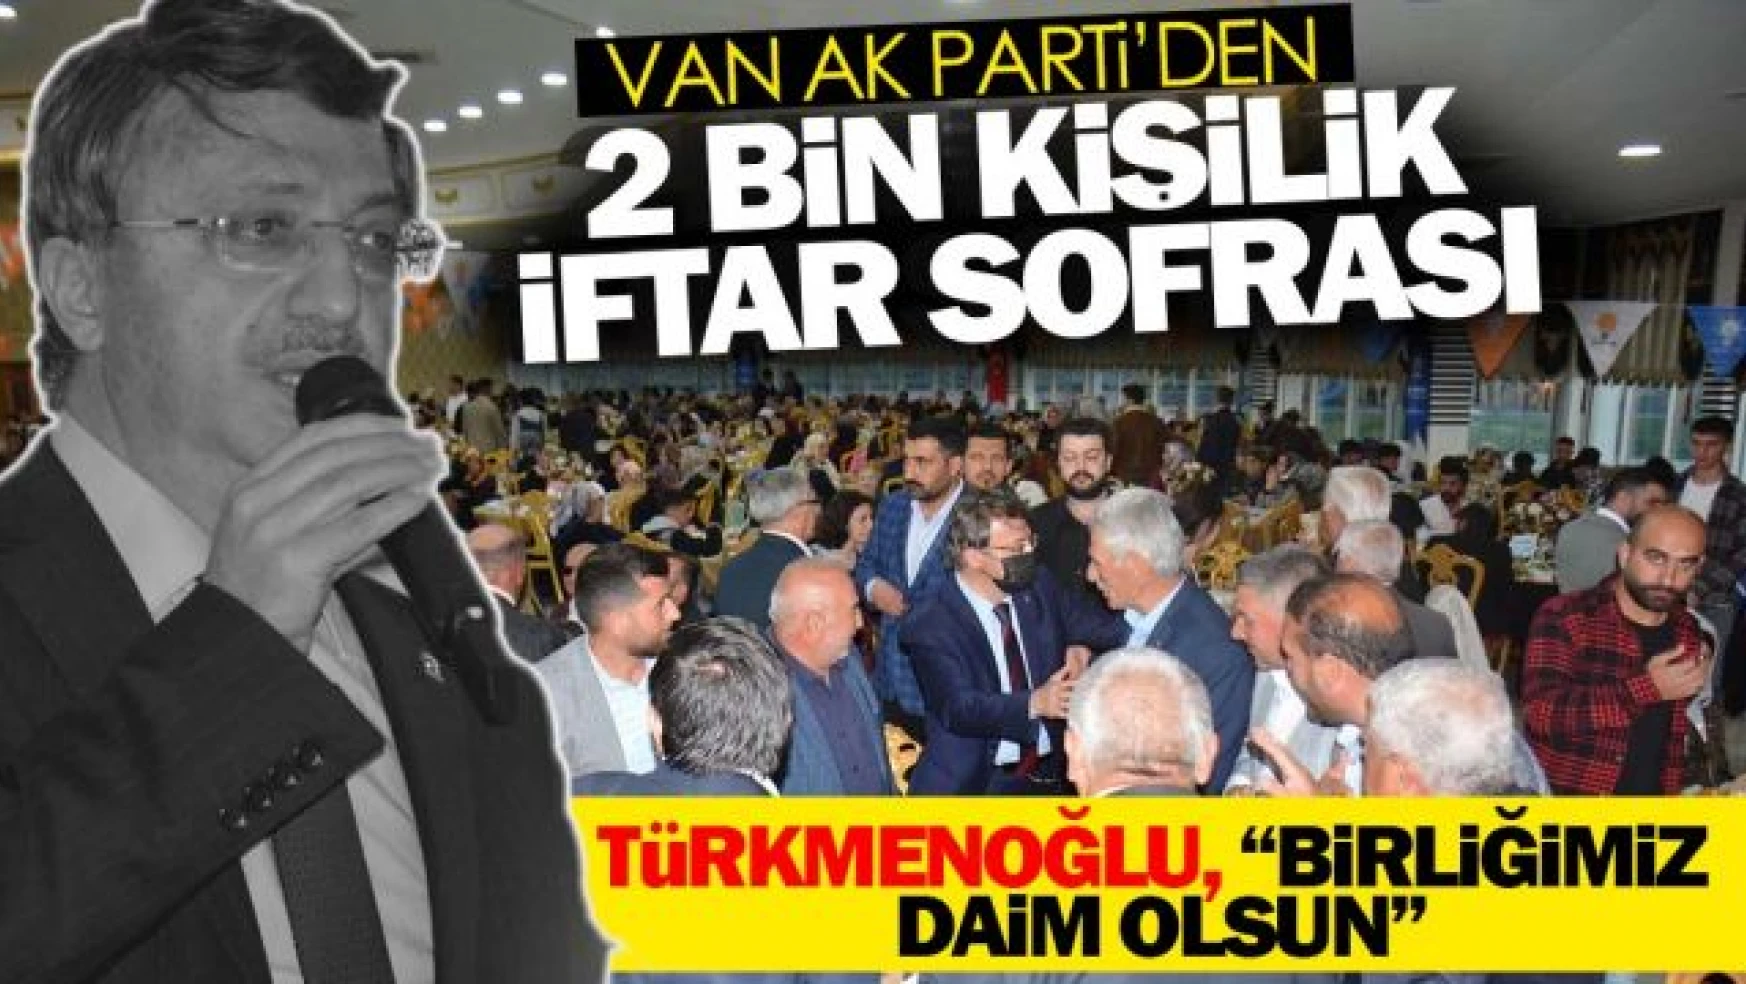 Van AK Parti, 2 bin kişilik iftar sofrası kurdu